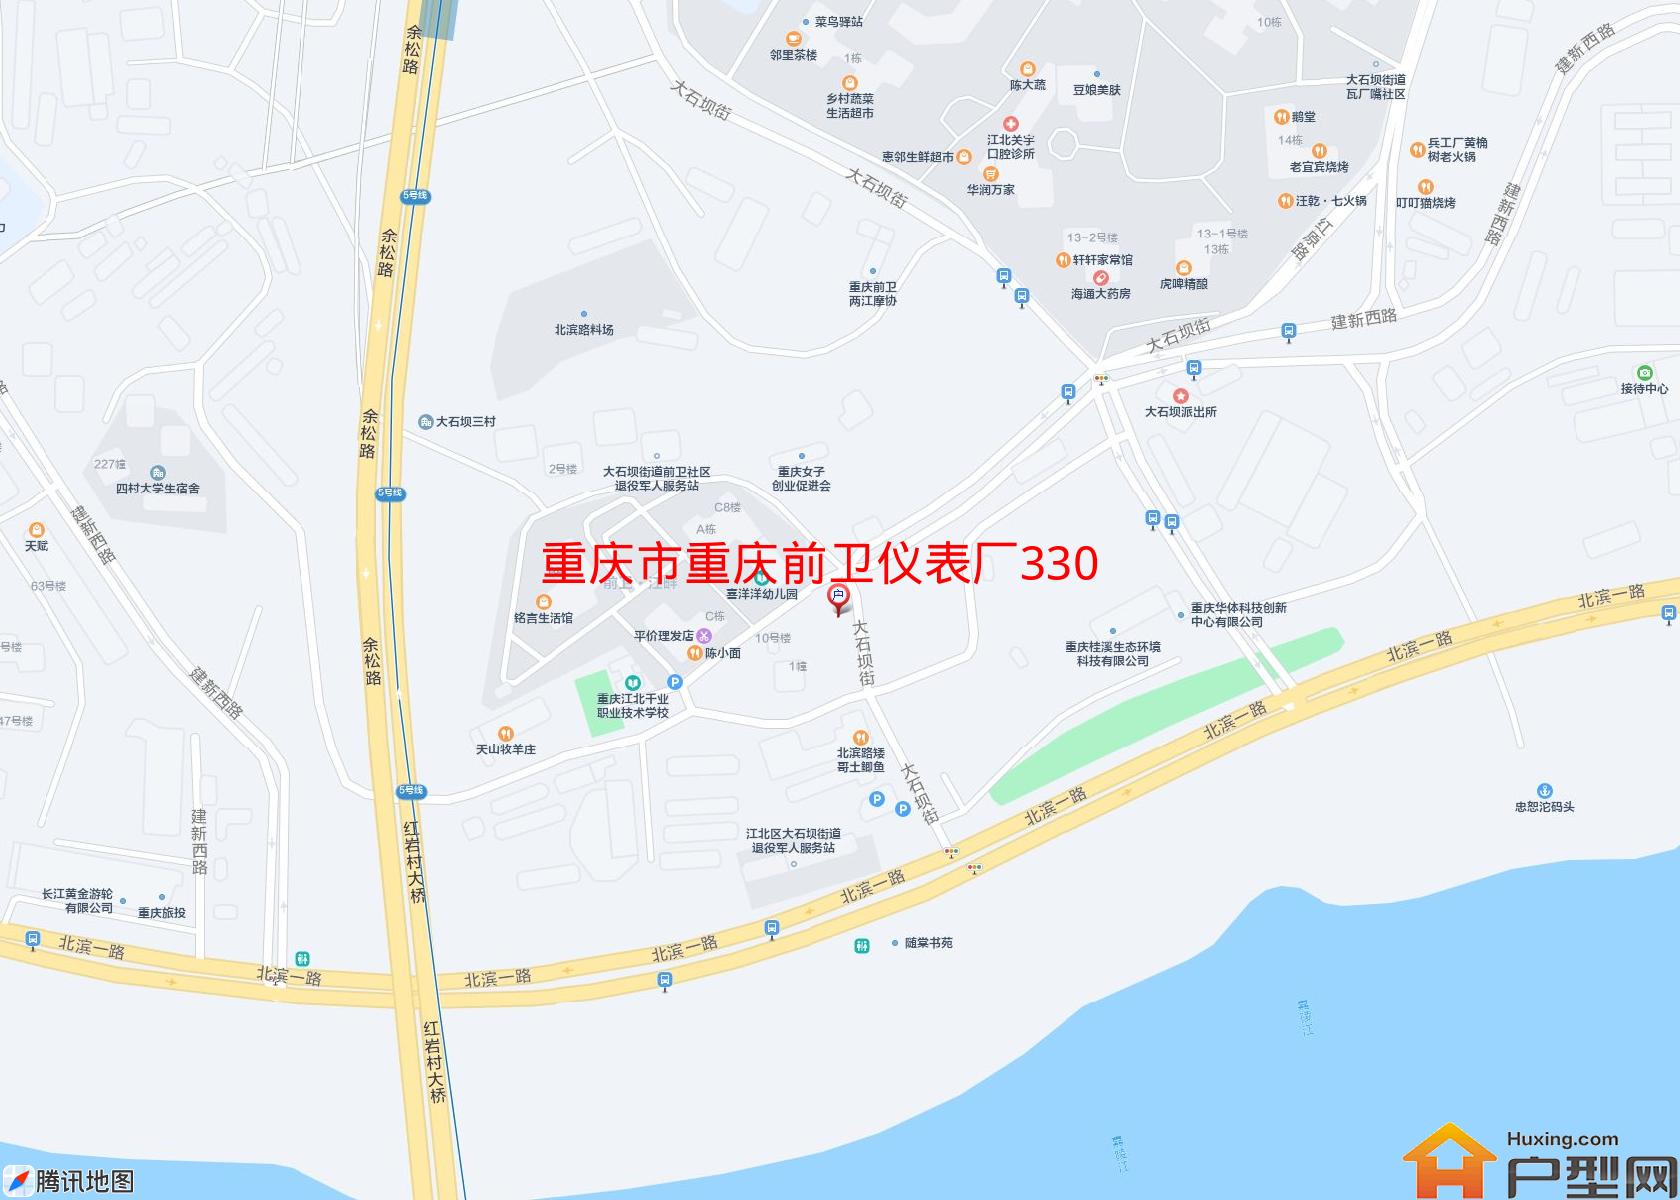 重庆前卫仪表厂330职工集资楼小区 - 户型网